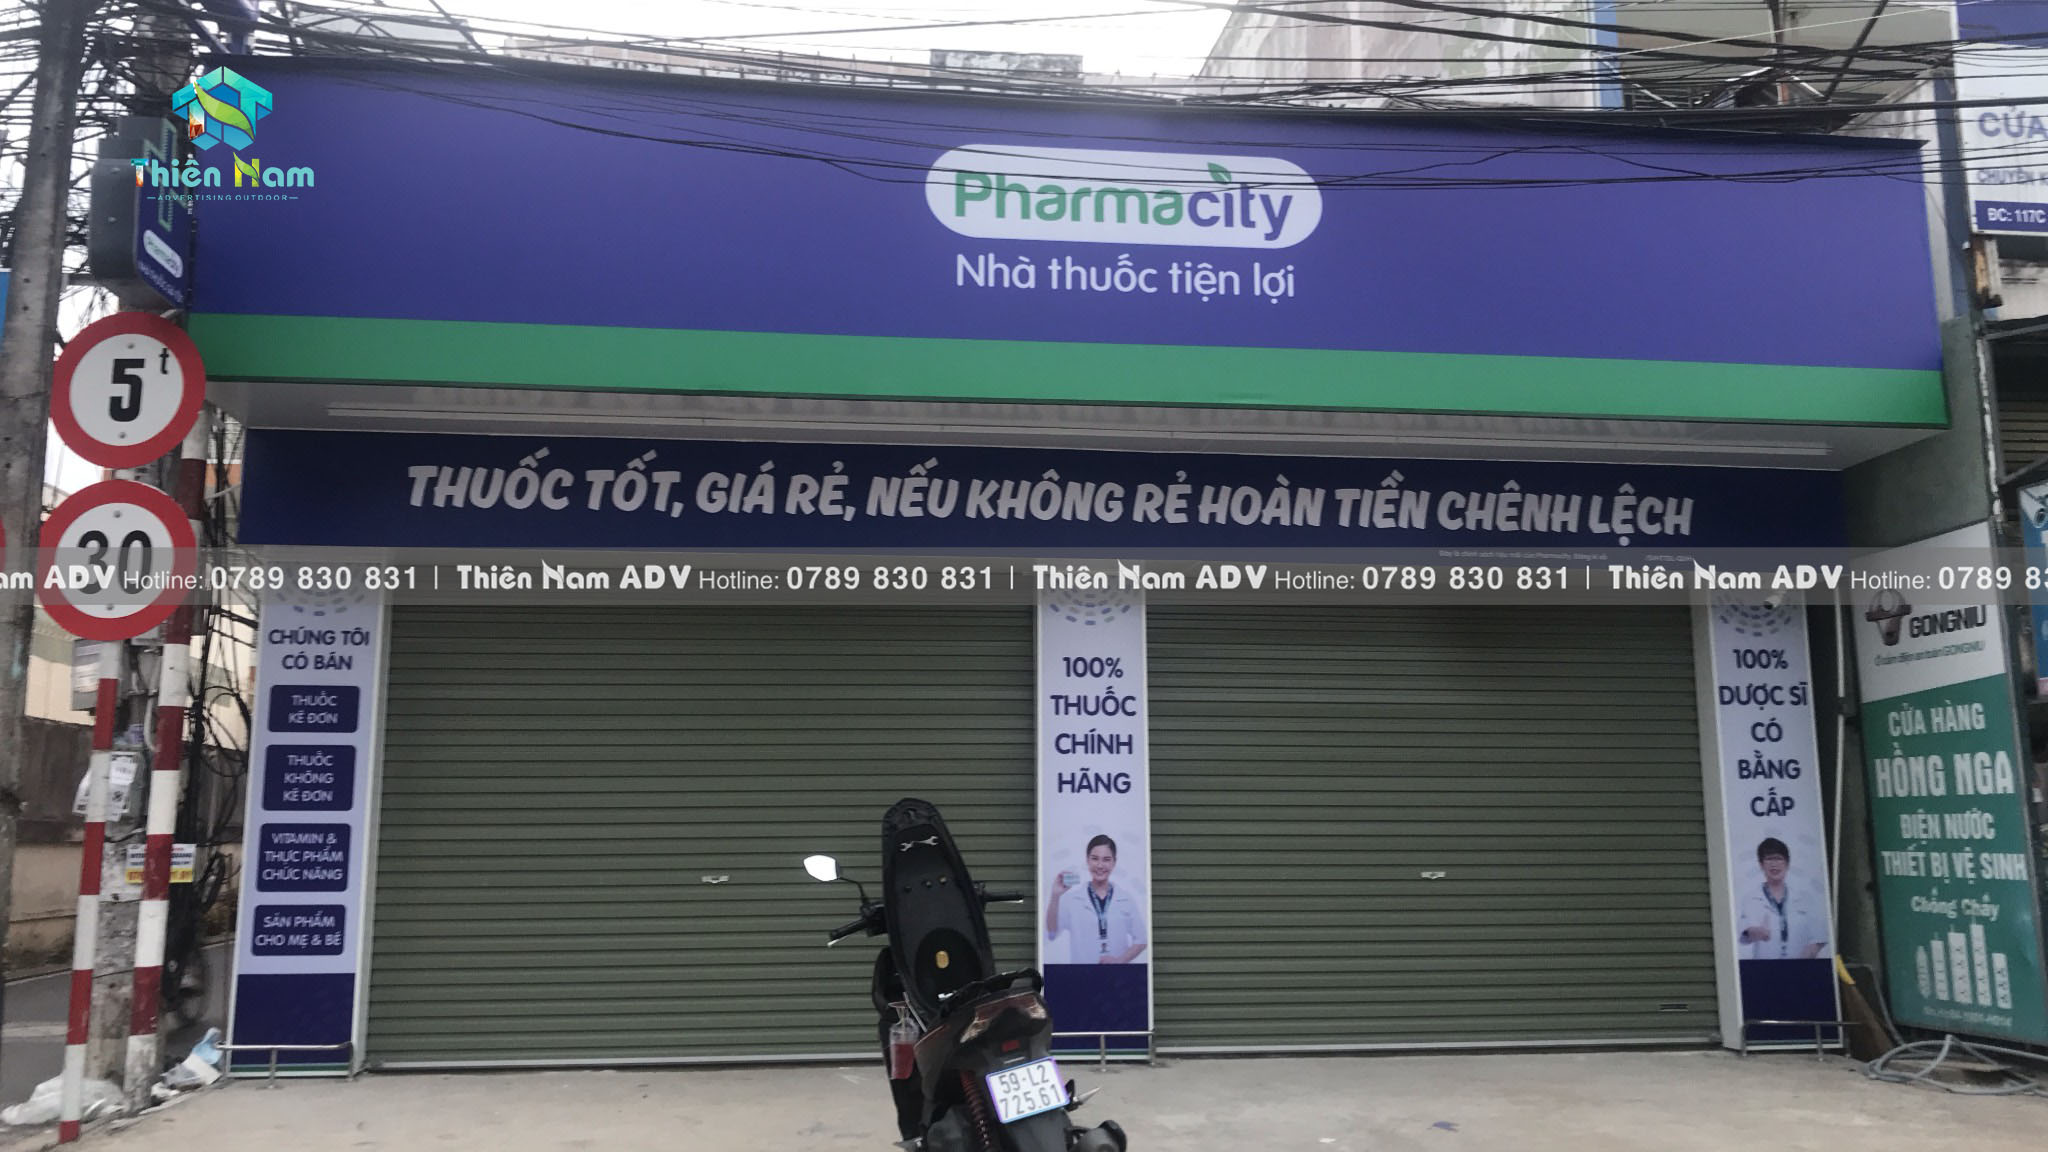 Hoàn thiện bảng hiệu Pharmacity